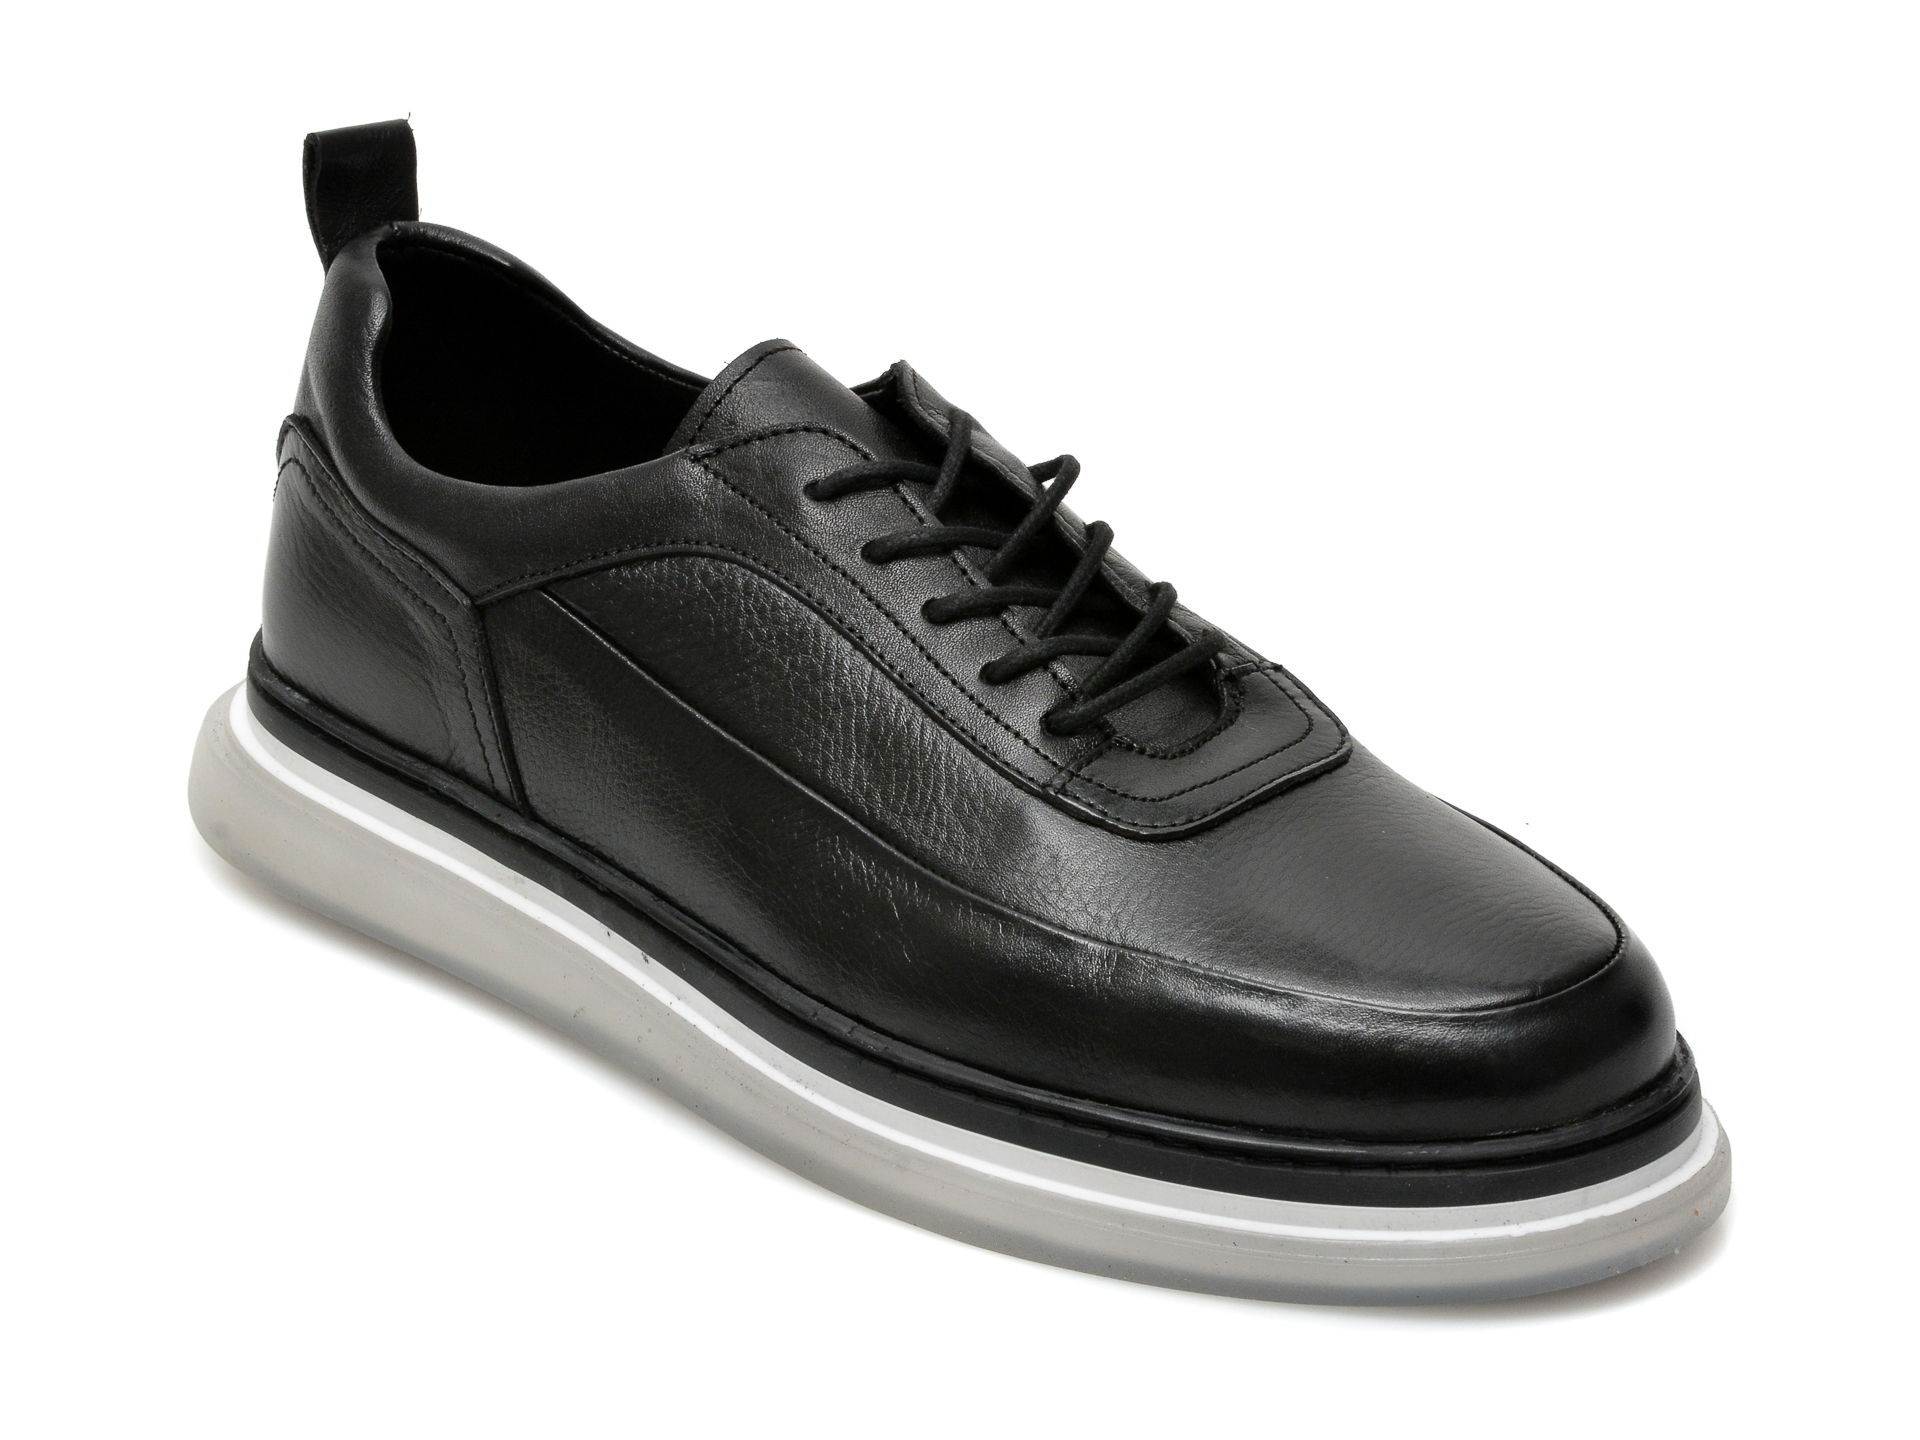 Pantofi OTTER negri, M6380, din piele naturala 2023 ❤️ Pret Super Black Friday otter.ro imagine noua 2022